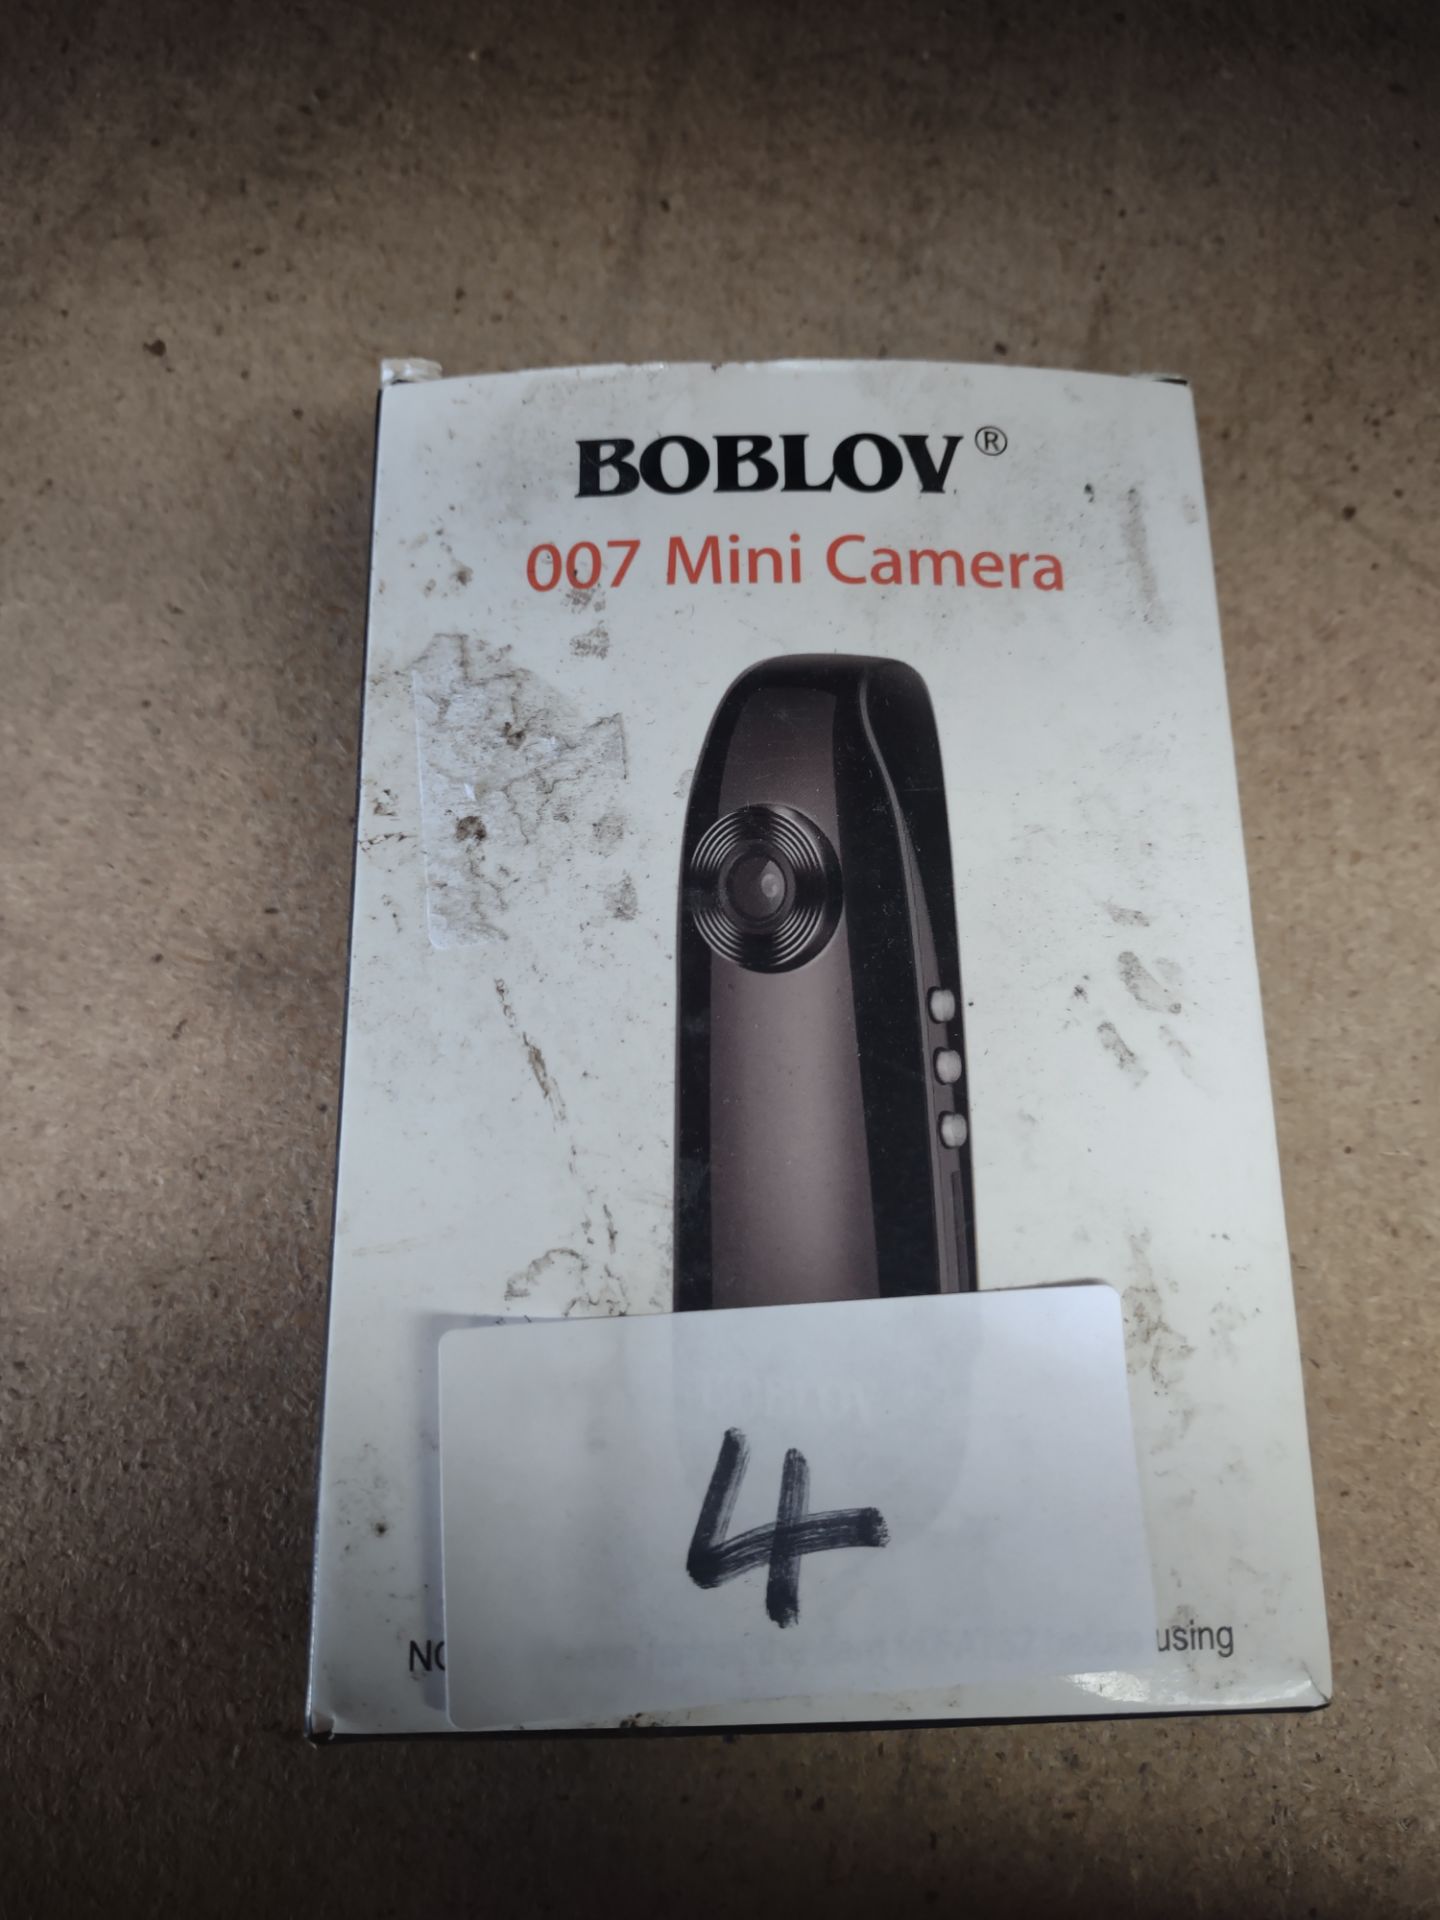 Boblov Security Body Camera. RRP £80 - Grade U